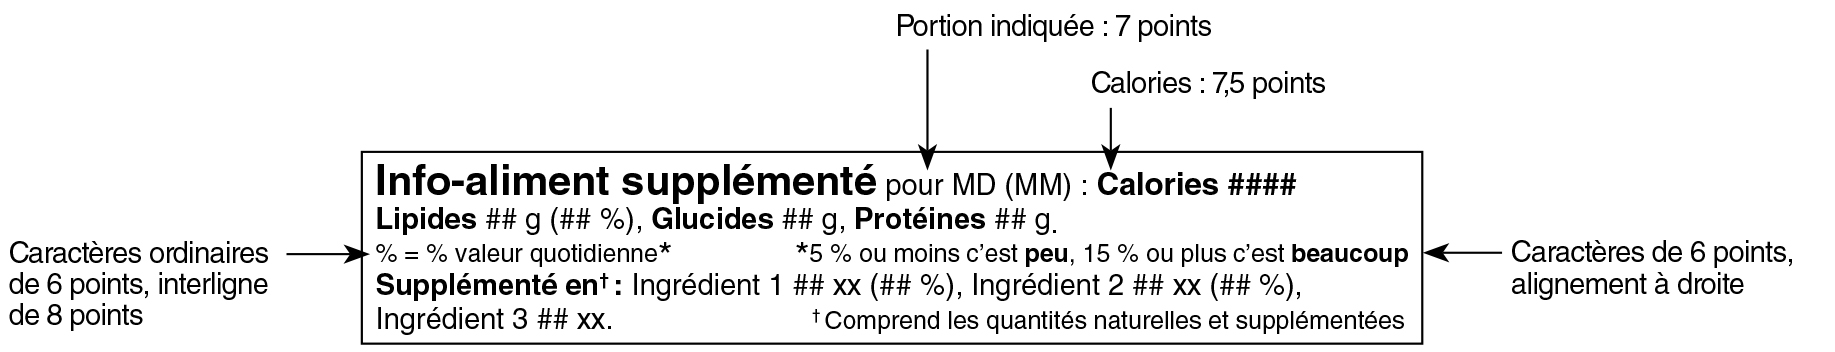 Modèle linéaire simplifié français du tableau des renseignements sur les aliments supplémentés avec indications. Version texte ci-dessous.